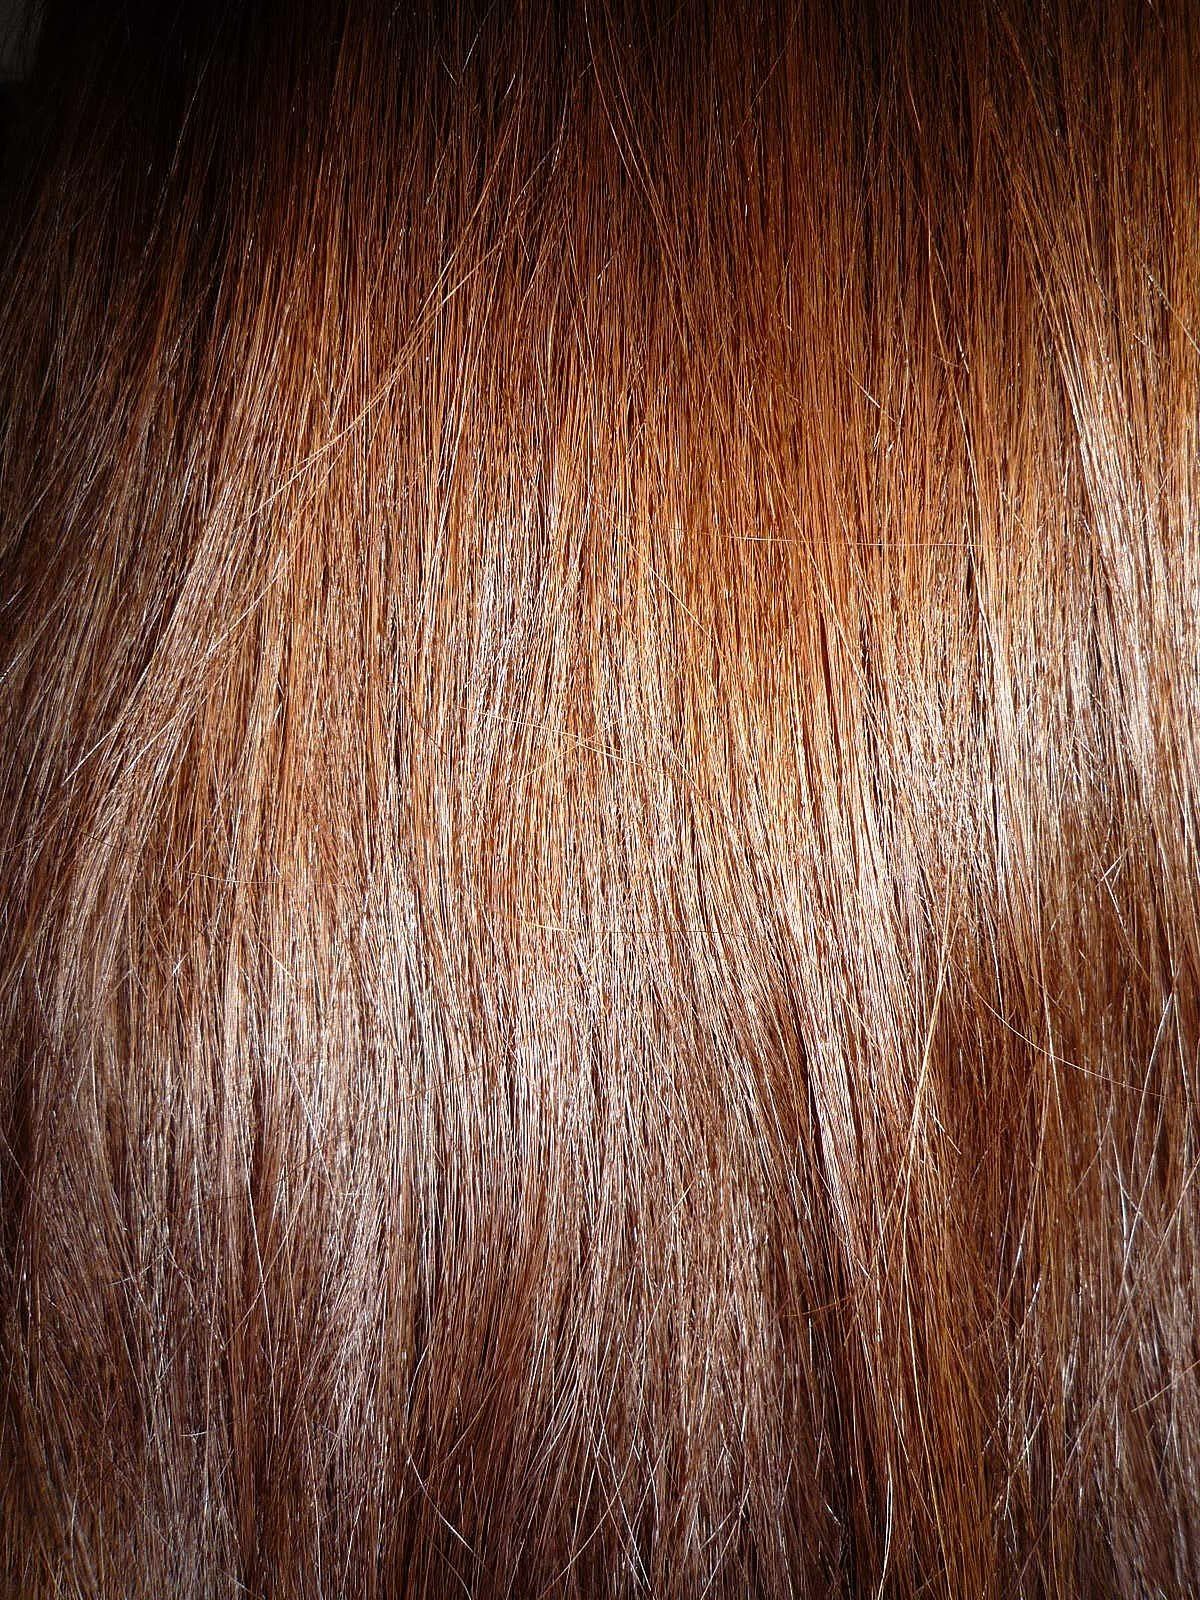 Brown Human Hair